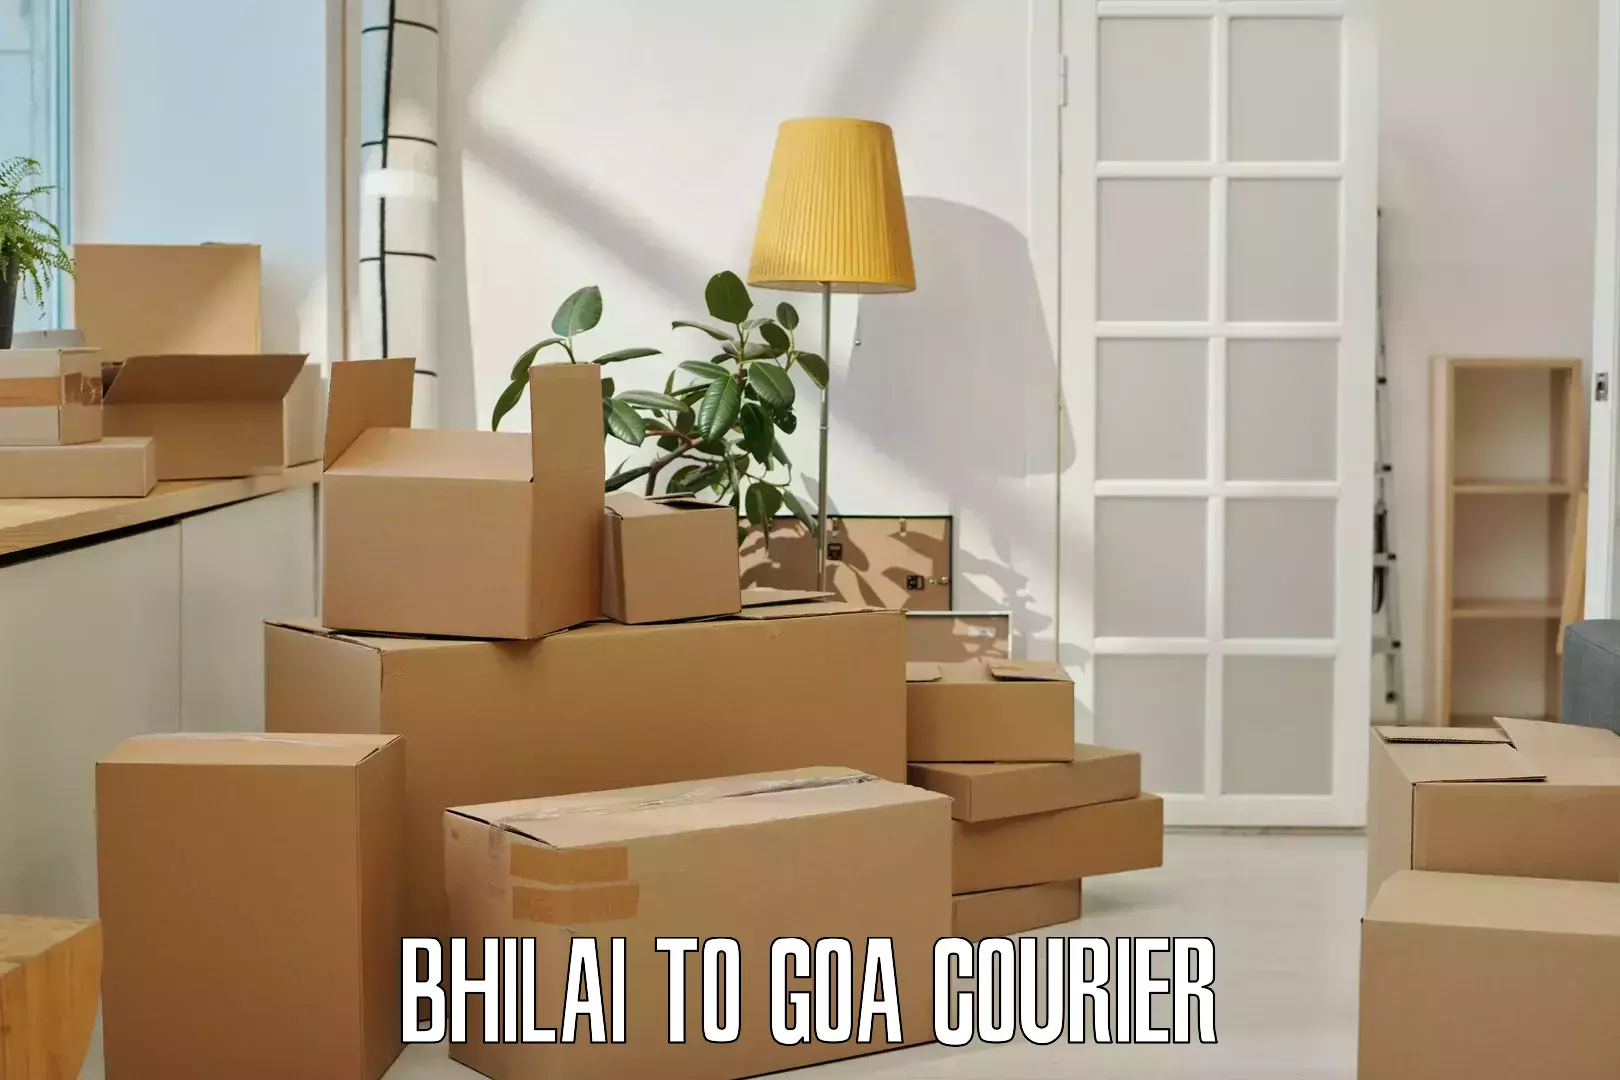 Efficient cargo handling Bhilai to Goa